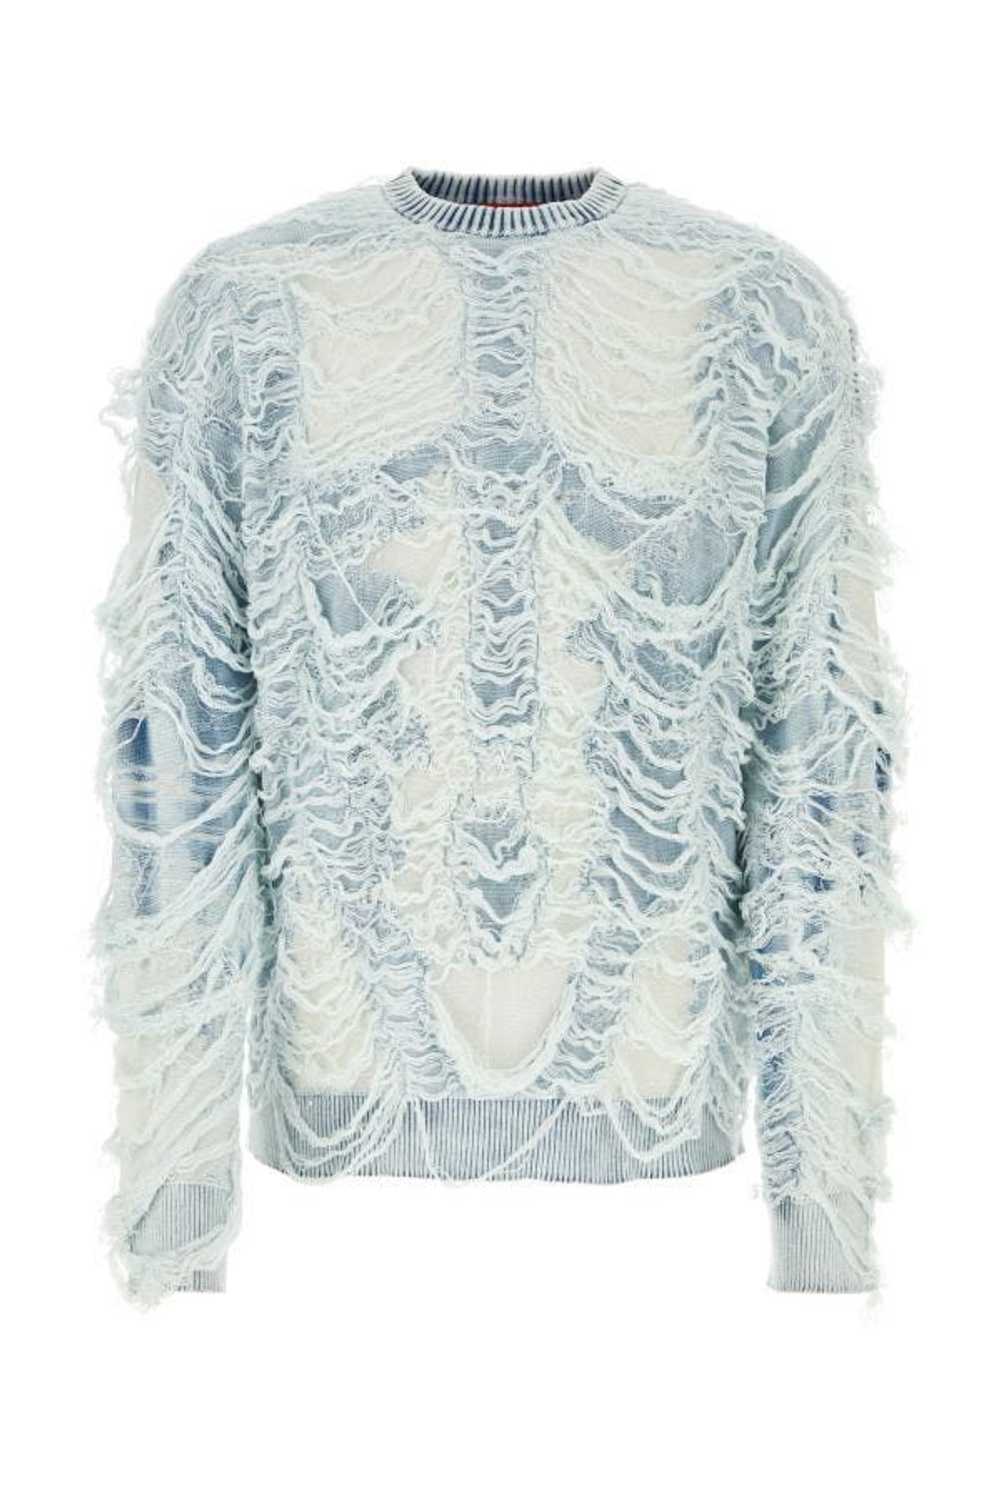 Diesel Embellished Cotton Blend K-Bacco Sweater - image 3